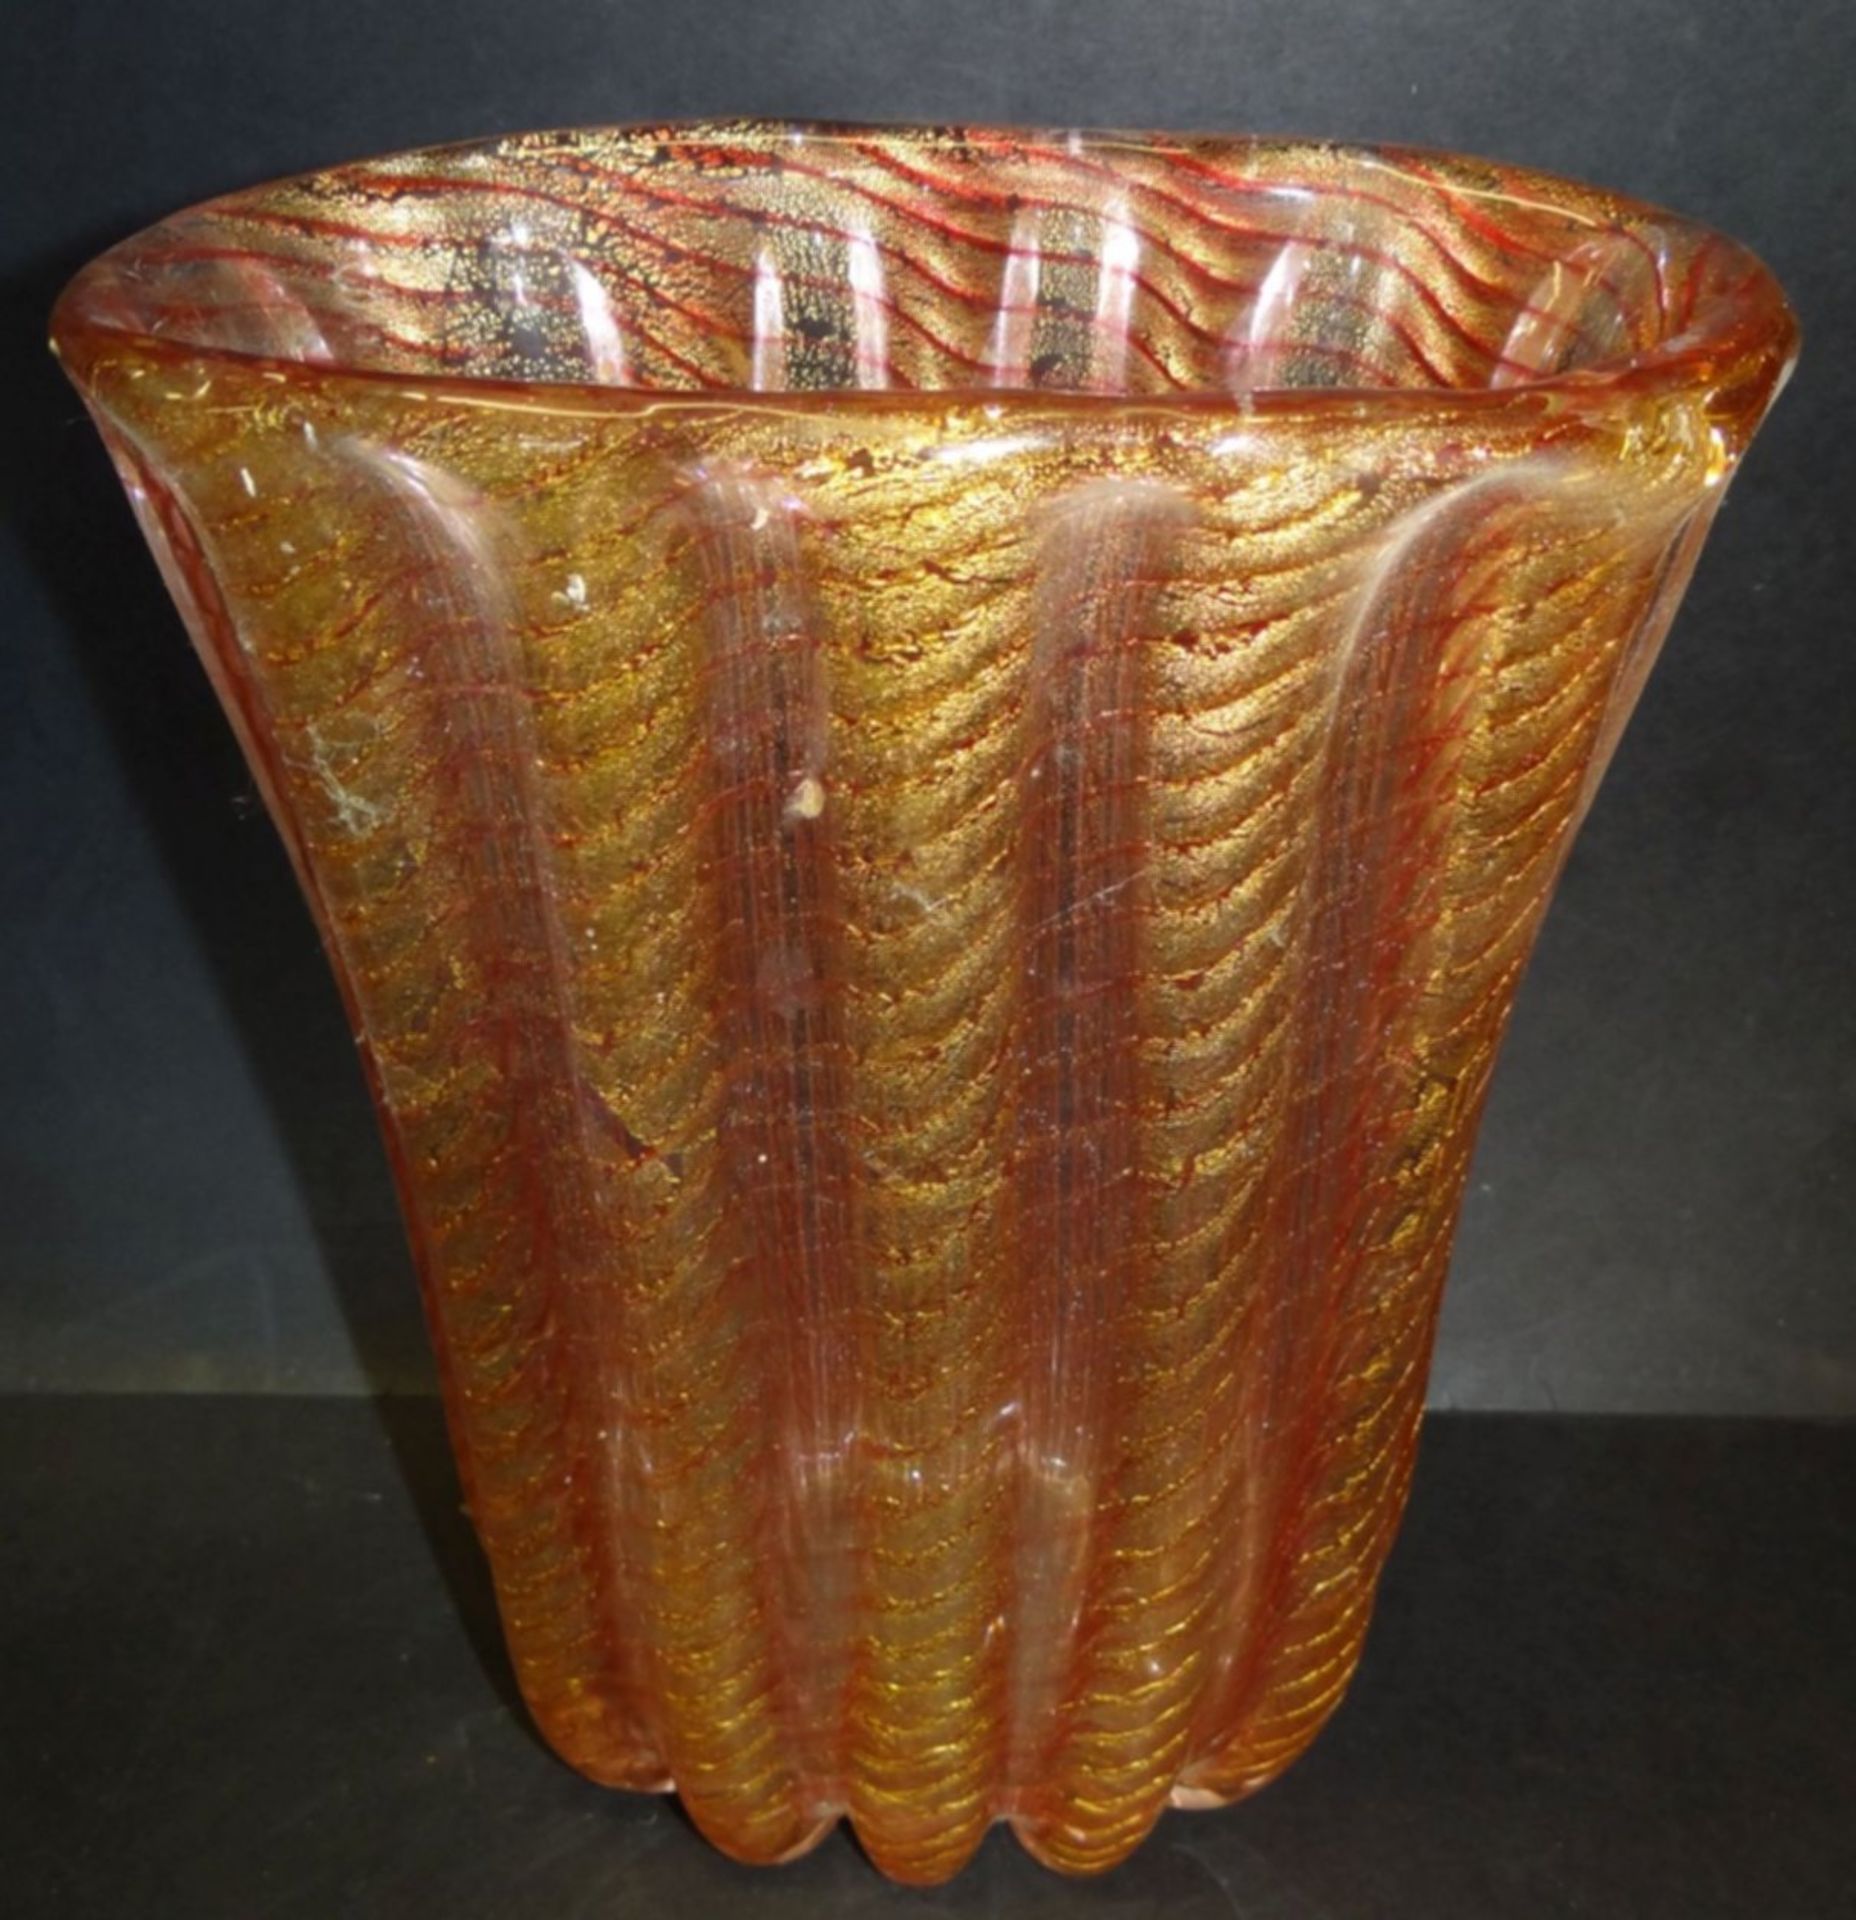 grosse ovoide Vase "Barovier&Toso", Murano, Goldeinschmelzzungen und rote Streifen, H-25 cm, B-20 - Bild 2 aus 5